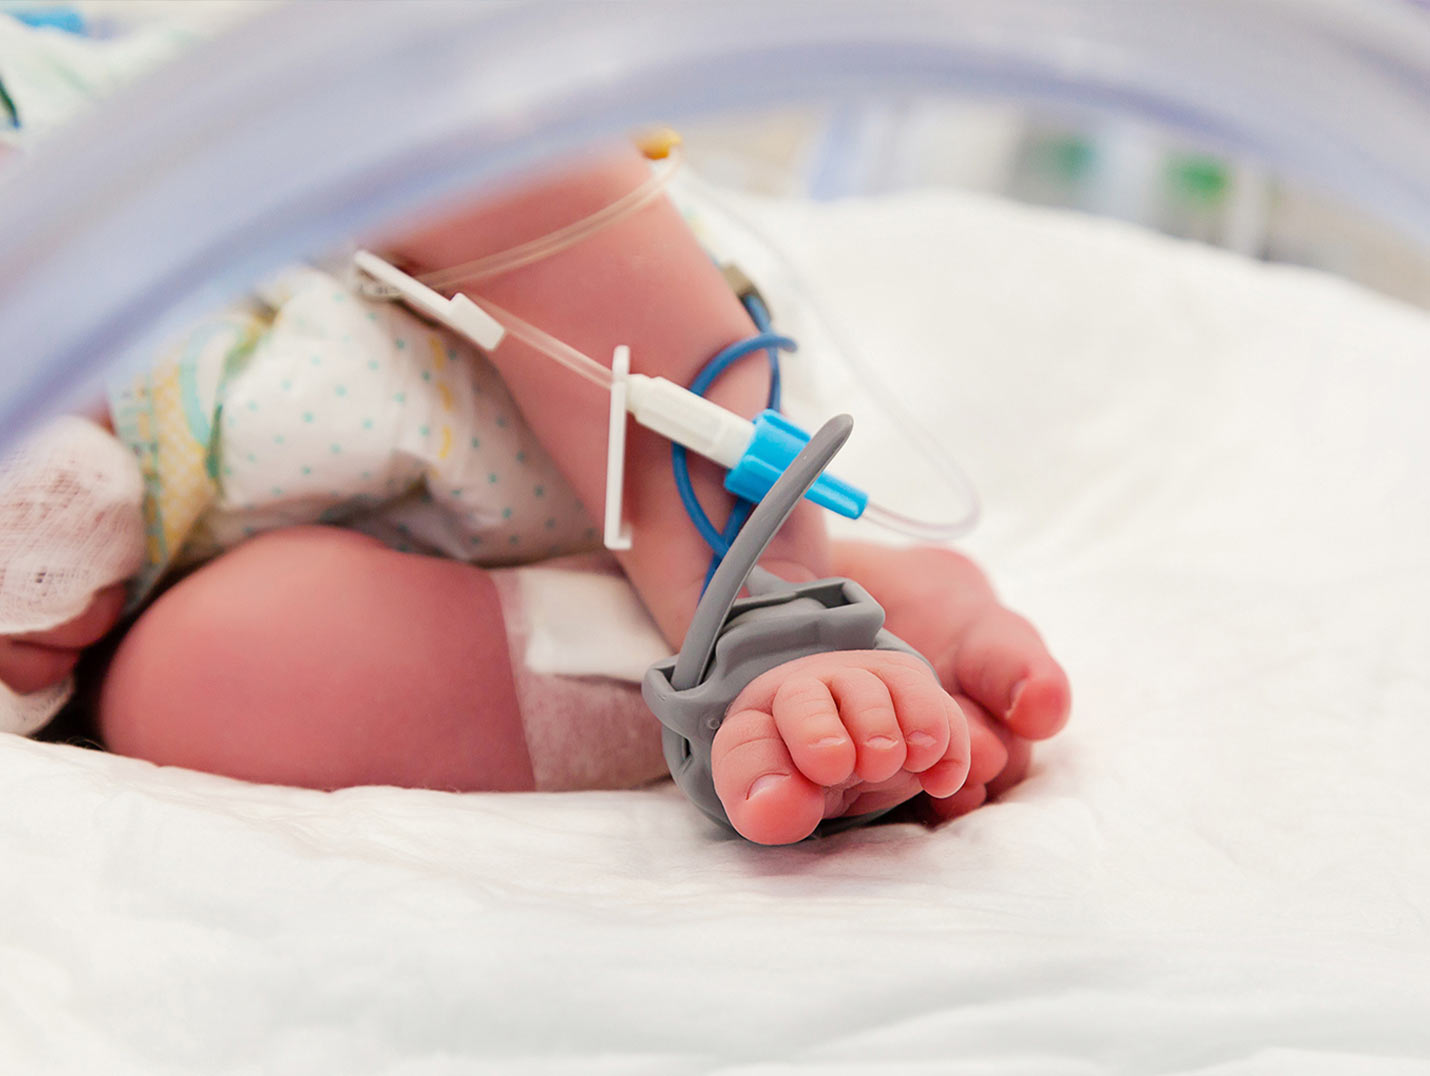 Pies de un bebé recién nacido con un oxímetro neonatal de color gris. El bebé está dentro de una incubadora